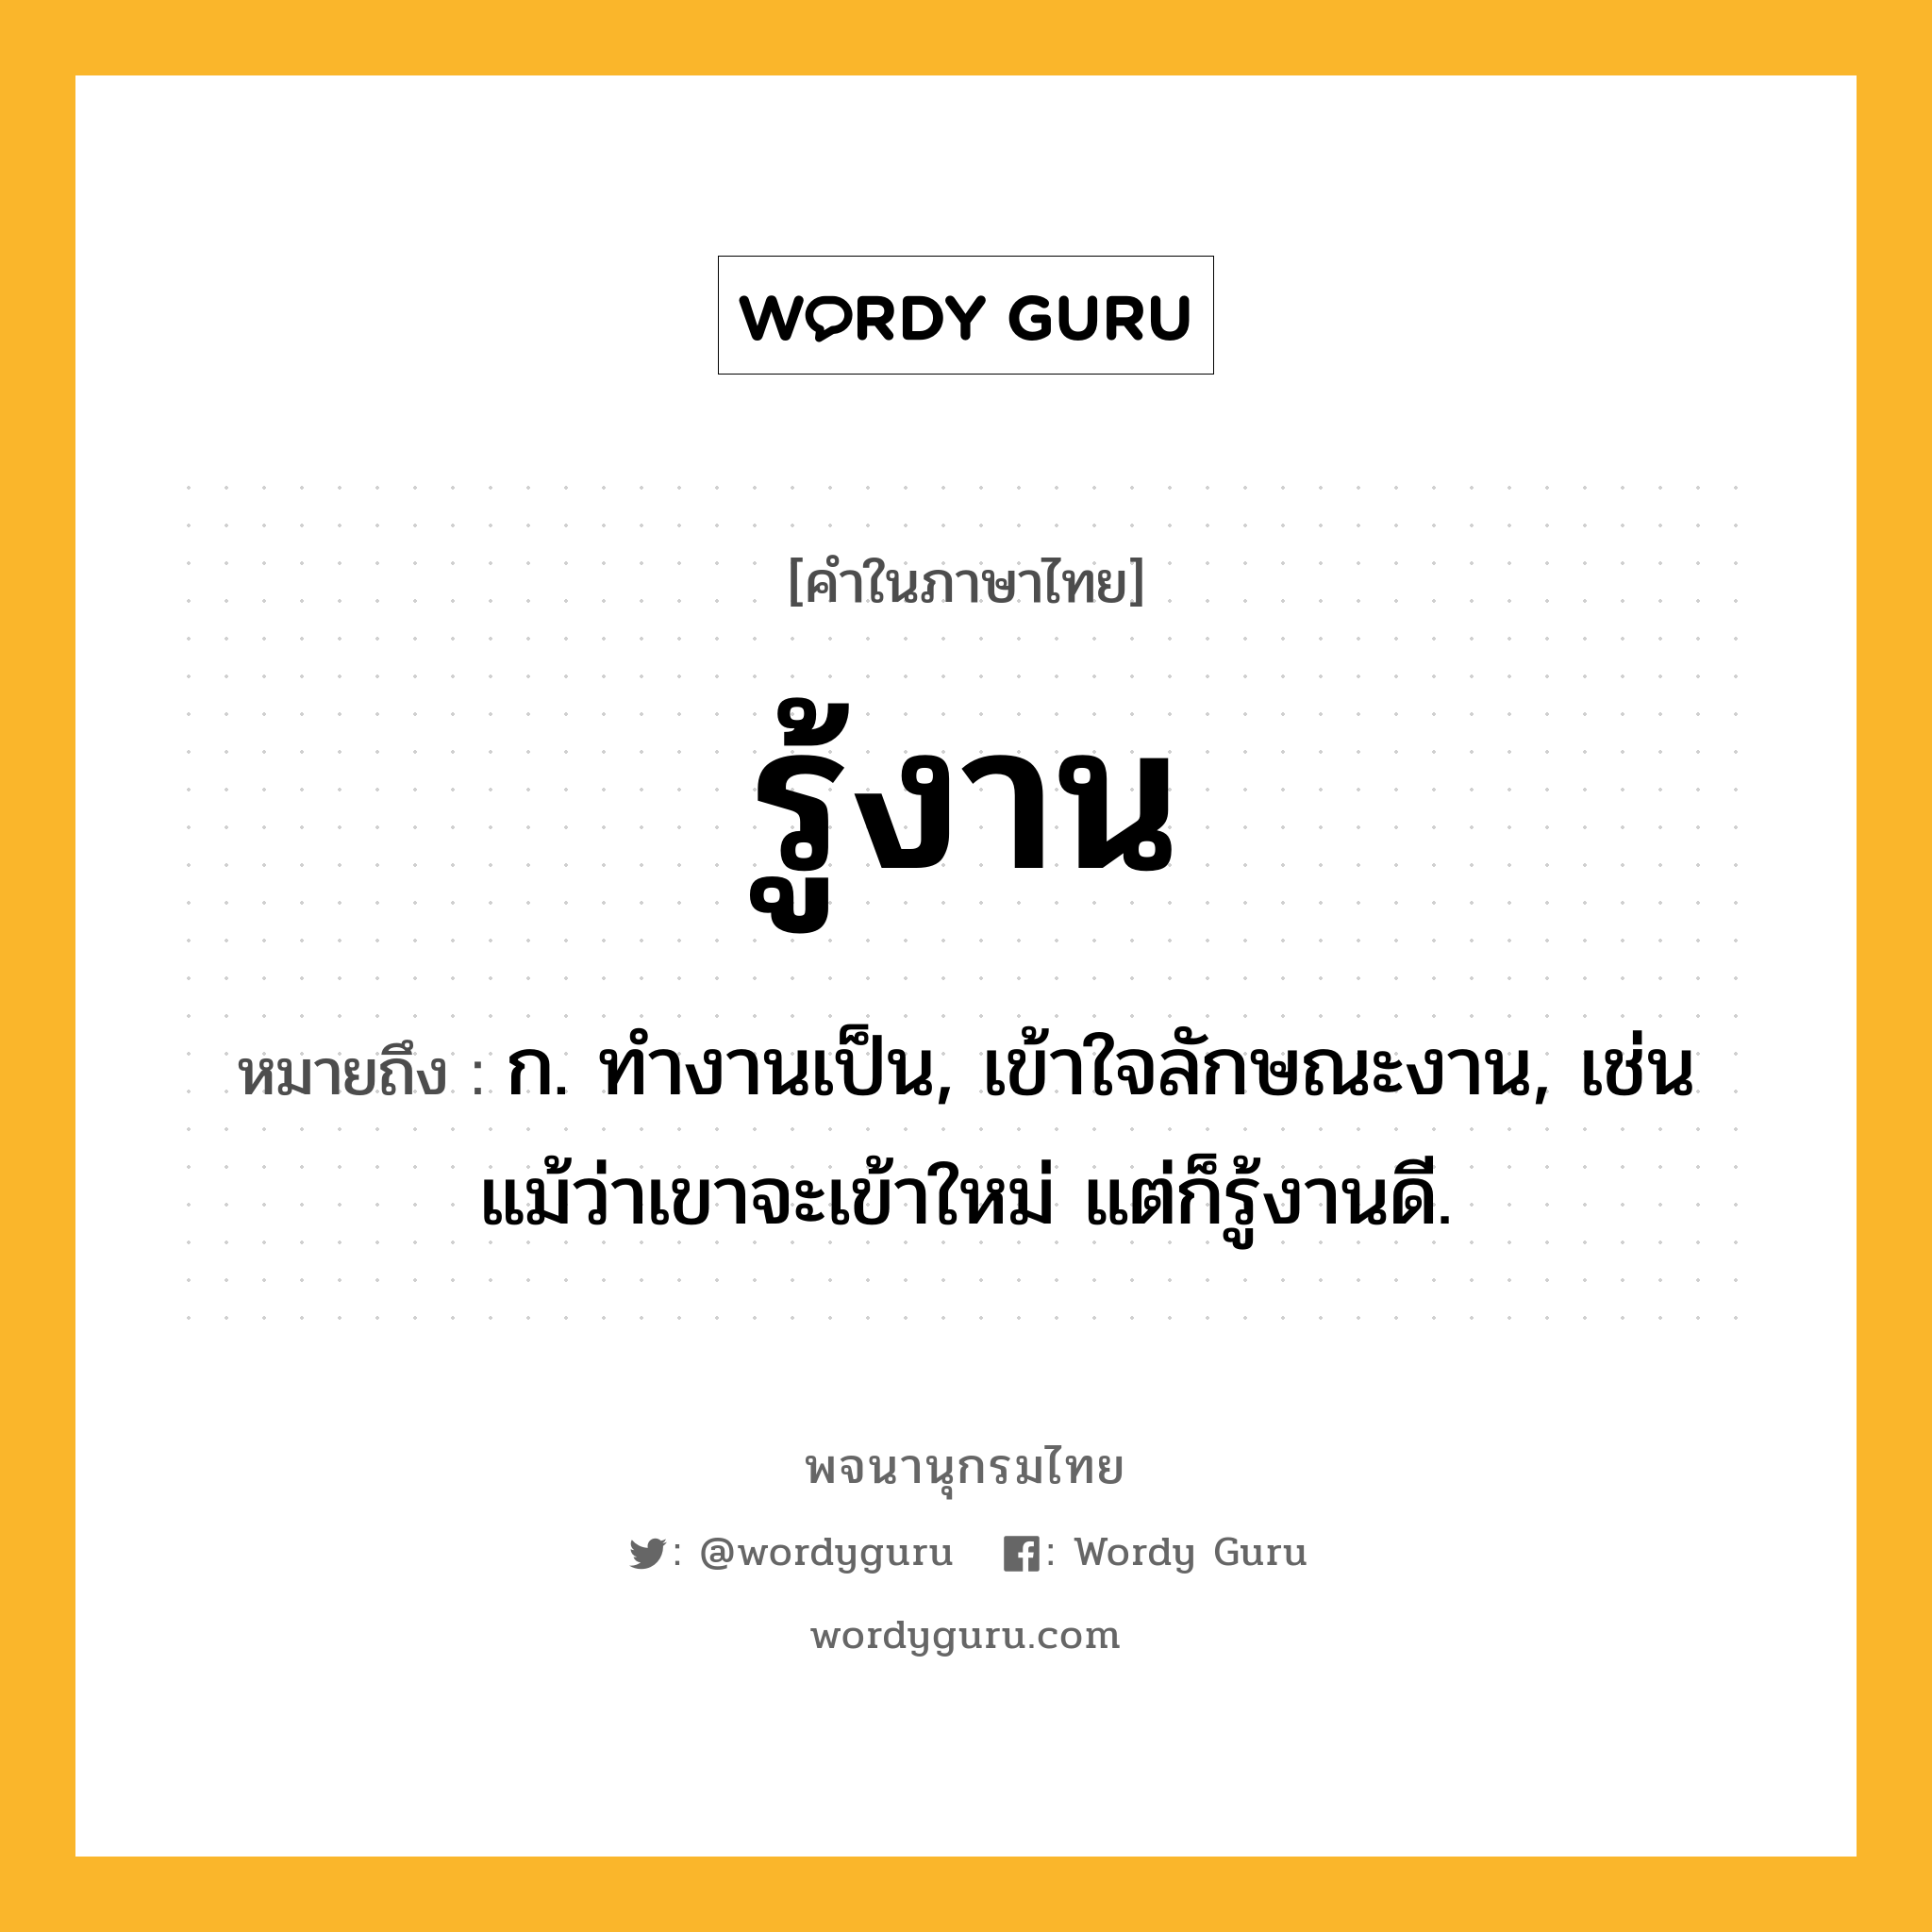 รู้งาน ความหมาย หมายถึงอะไร?, คำในภาษาไทย รู้งาน หมายถึง ก. ทำงานเป็น, เข้าใจลักษณะงาน, เช่น แม้ว่าเขาจะเข้าใหม่ แต่ก็รู้งานดี.